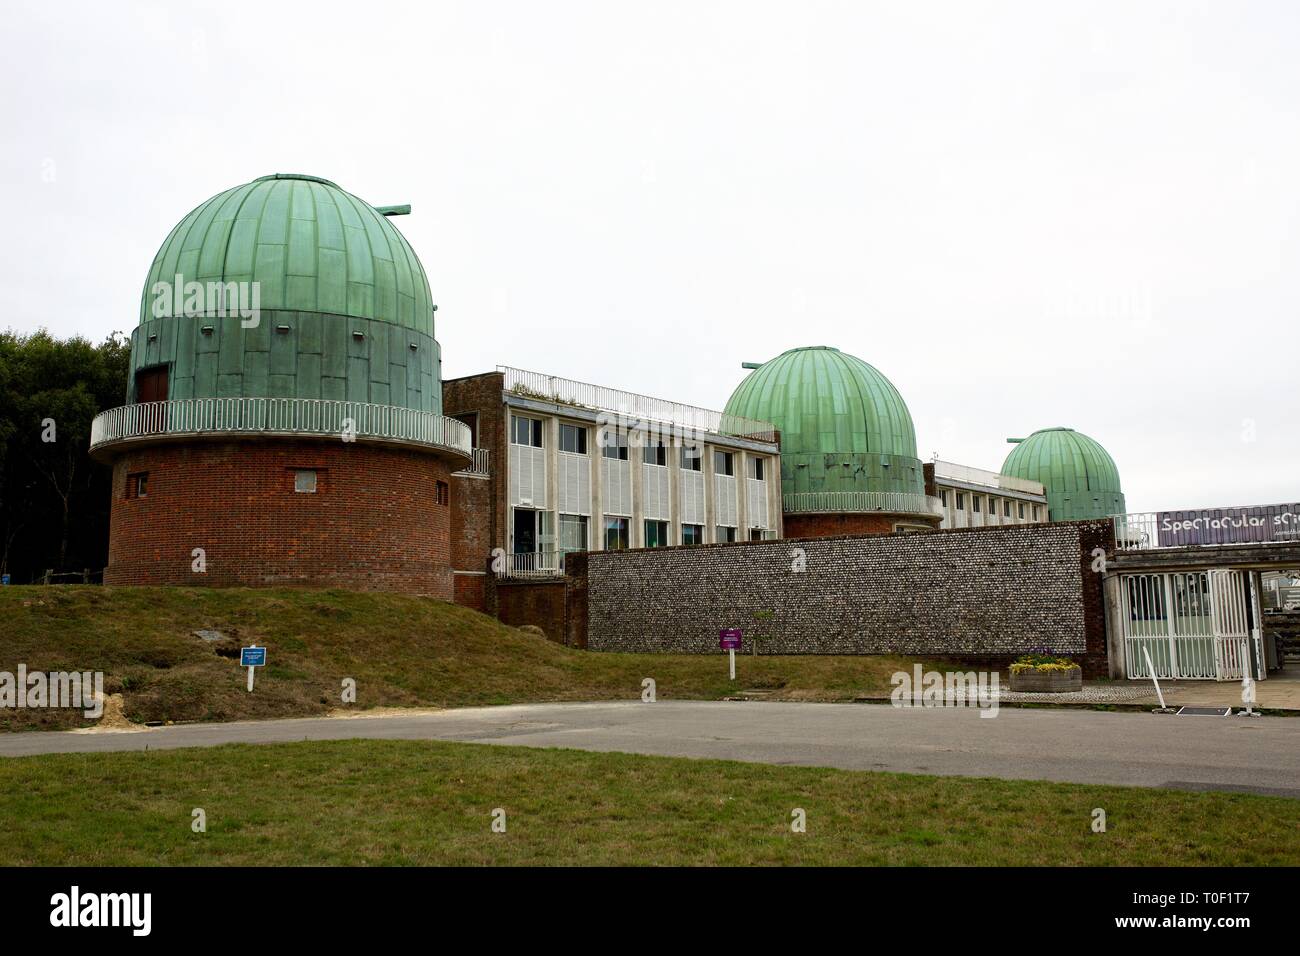 Ripresa a tutto campo della Specola Science Center, Herstmonceux, East Sussex, Regno Unito, che mostra tutte le tre cupole del telescopio Foto Stock